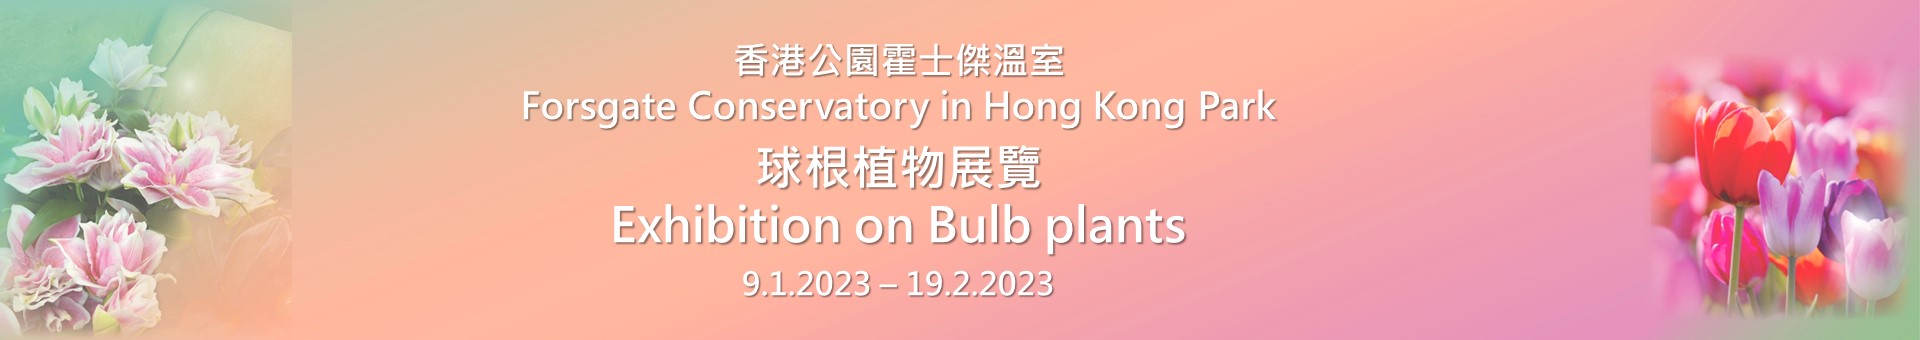 Exhibition on bulb plants at Hong Kong Park